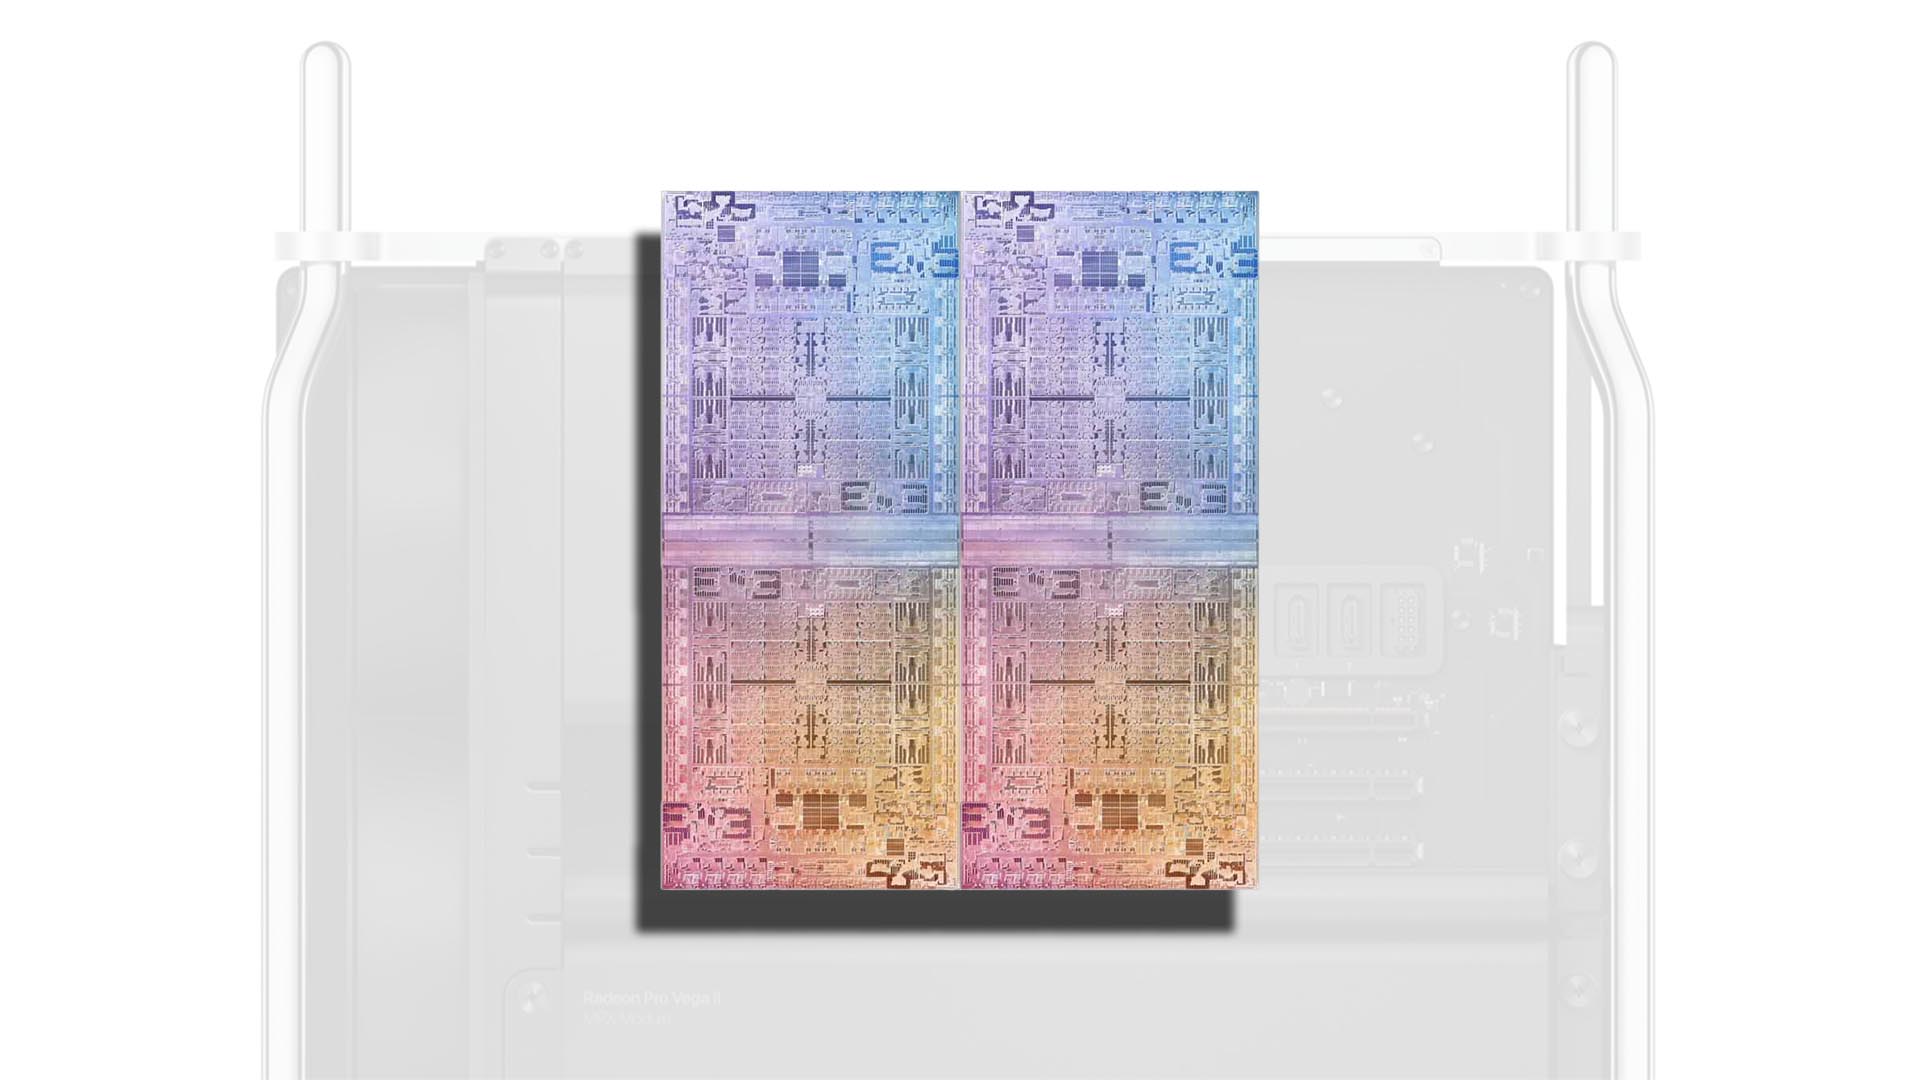 Two M1 Ultra chipsets fused together on the 2022 Mac Pro - Mac Pro 2022 می تواند از دو M1 Ultra Fused با هم برای ساخت یک سیلیکون واحد استفاده کند